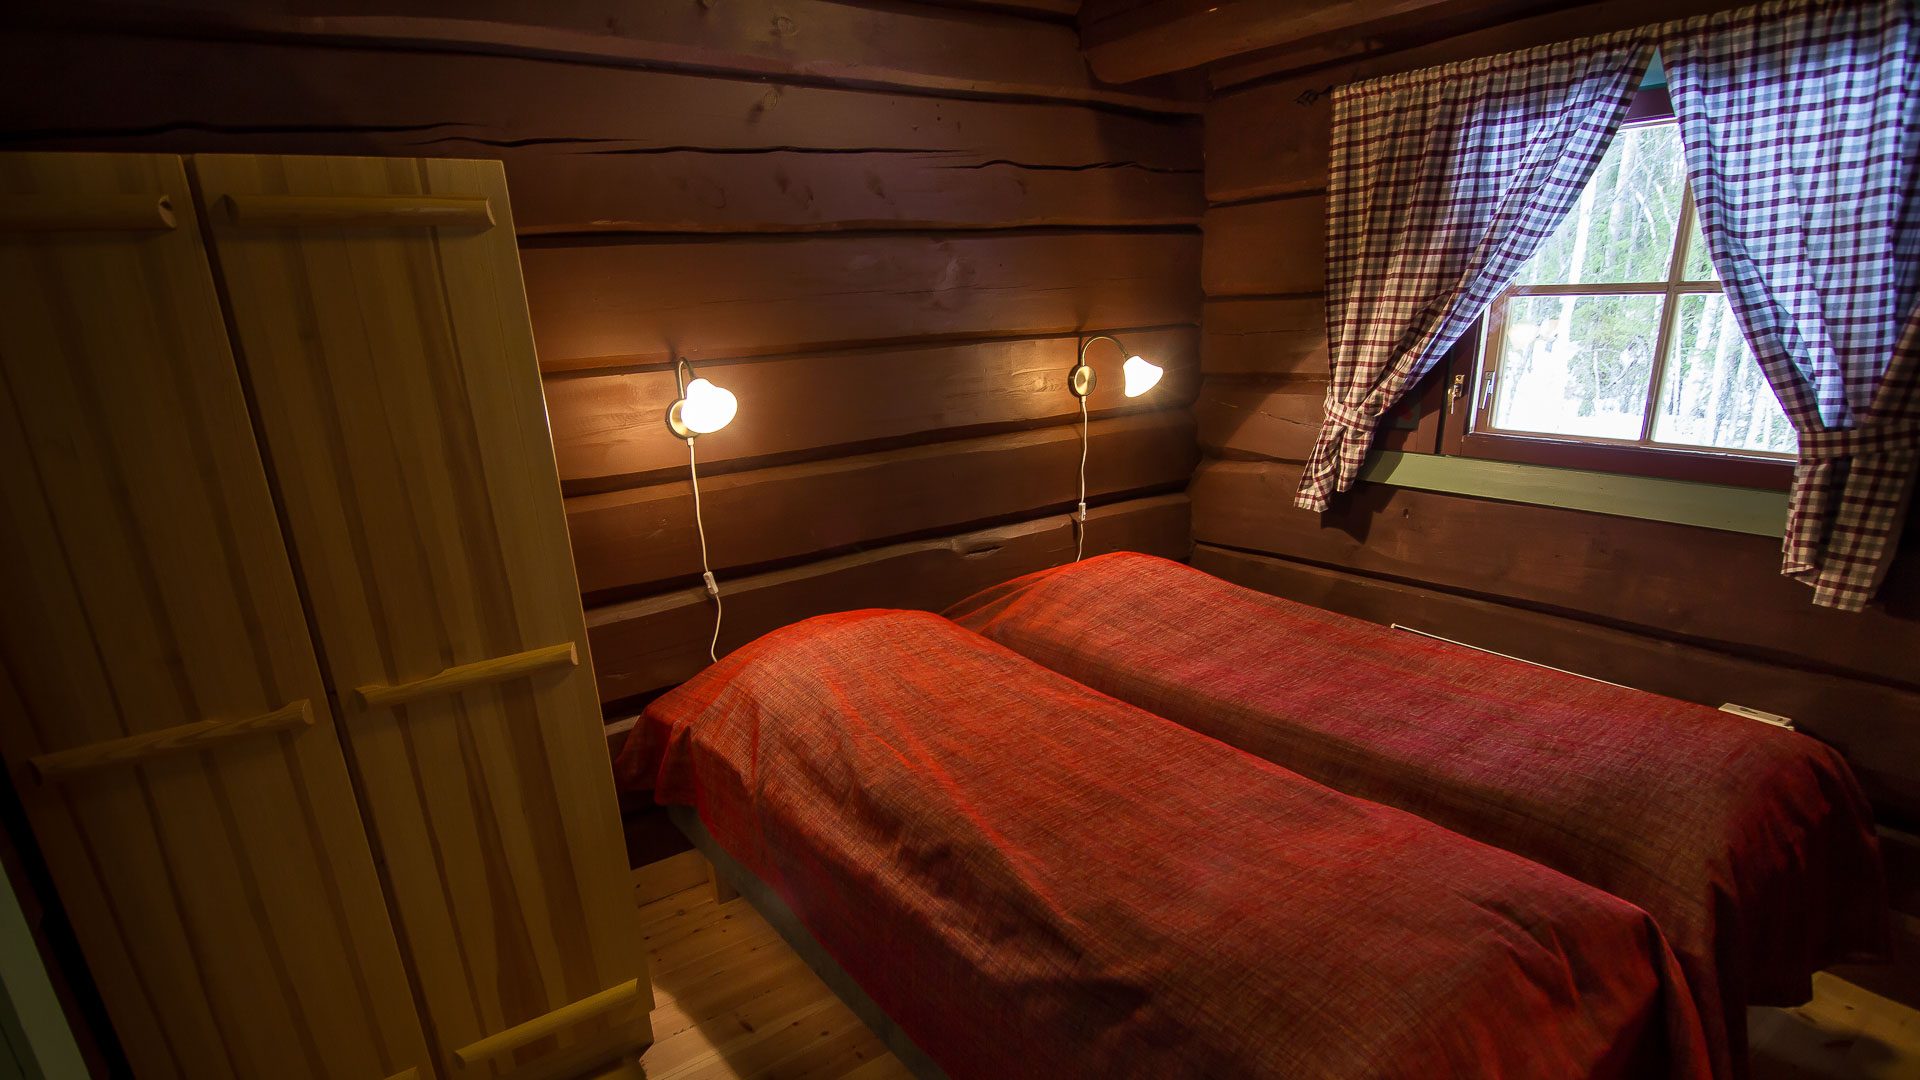 Accommodation / Aurora rooms, Arctic Circle Wilderness Resort, Rovaniemi, Villi Pohjola / Wild Nordic Finland @wildnordicfinland